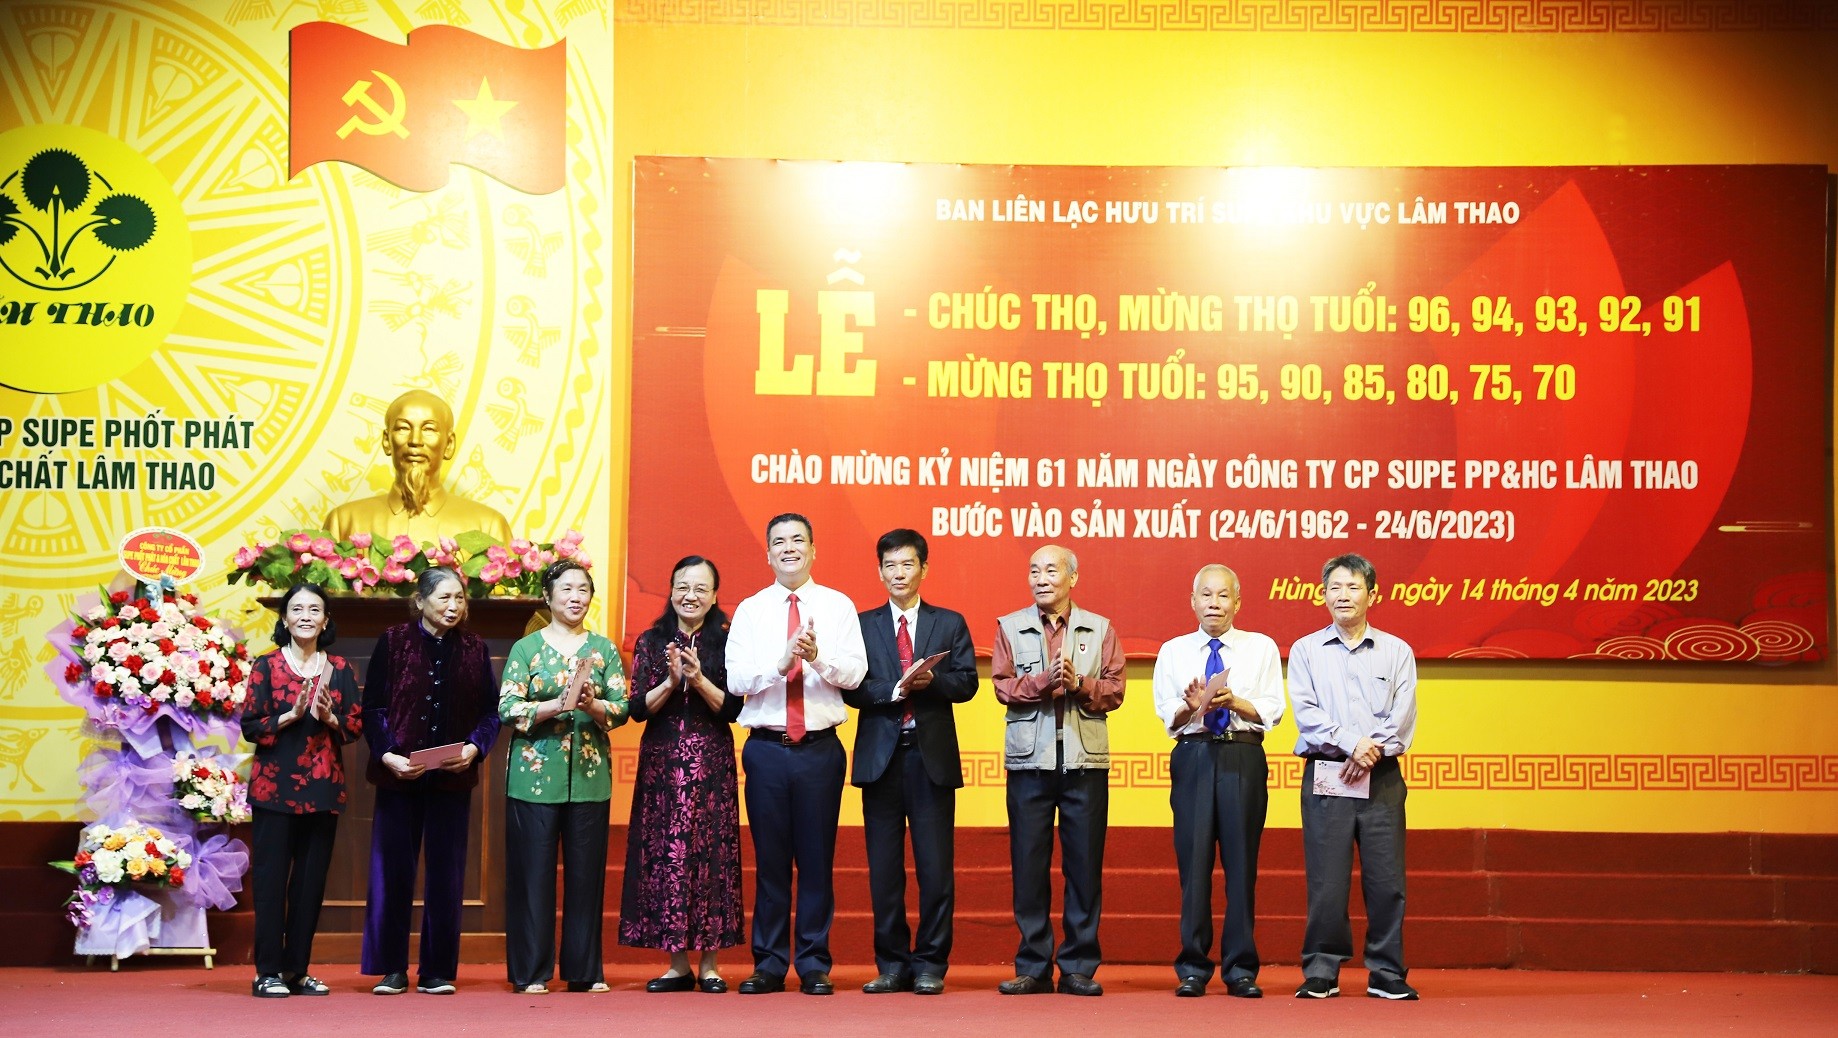 Hội hưu trí Supe khu vực Lâm Thao tổ chức gặp mặt, Chúc thọ và Mừng thọ cho hội viên